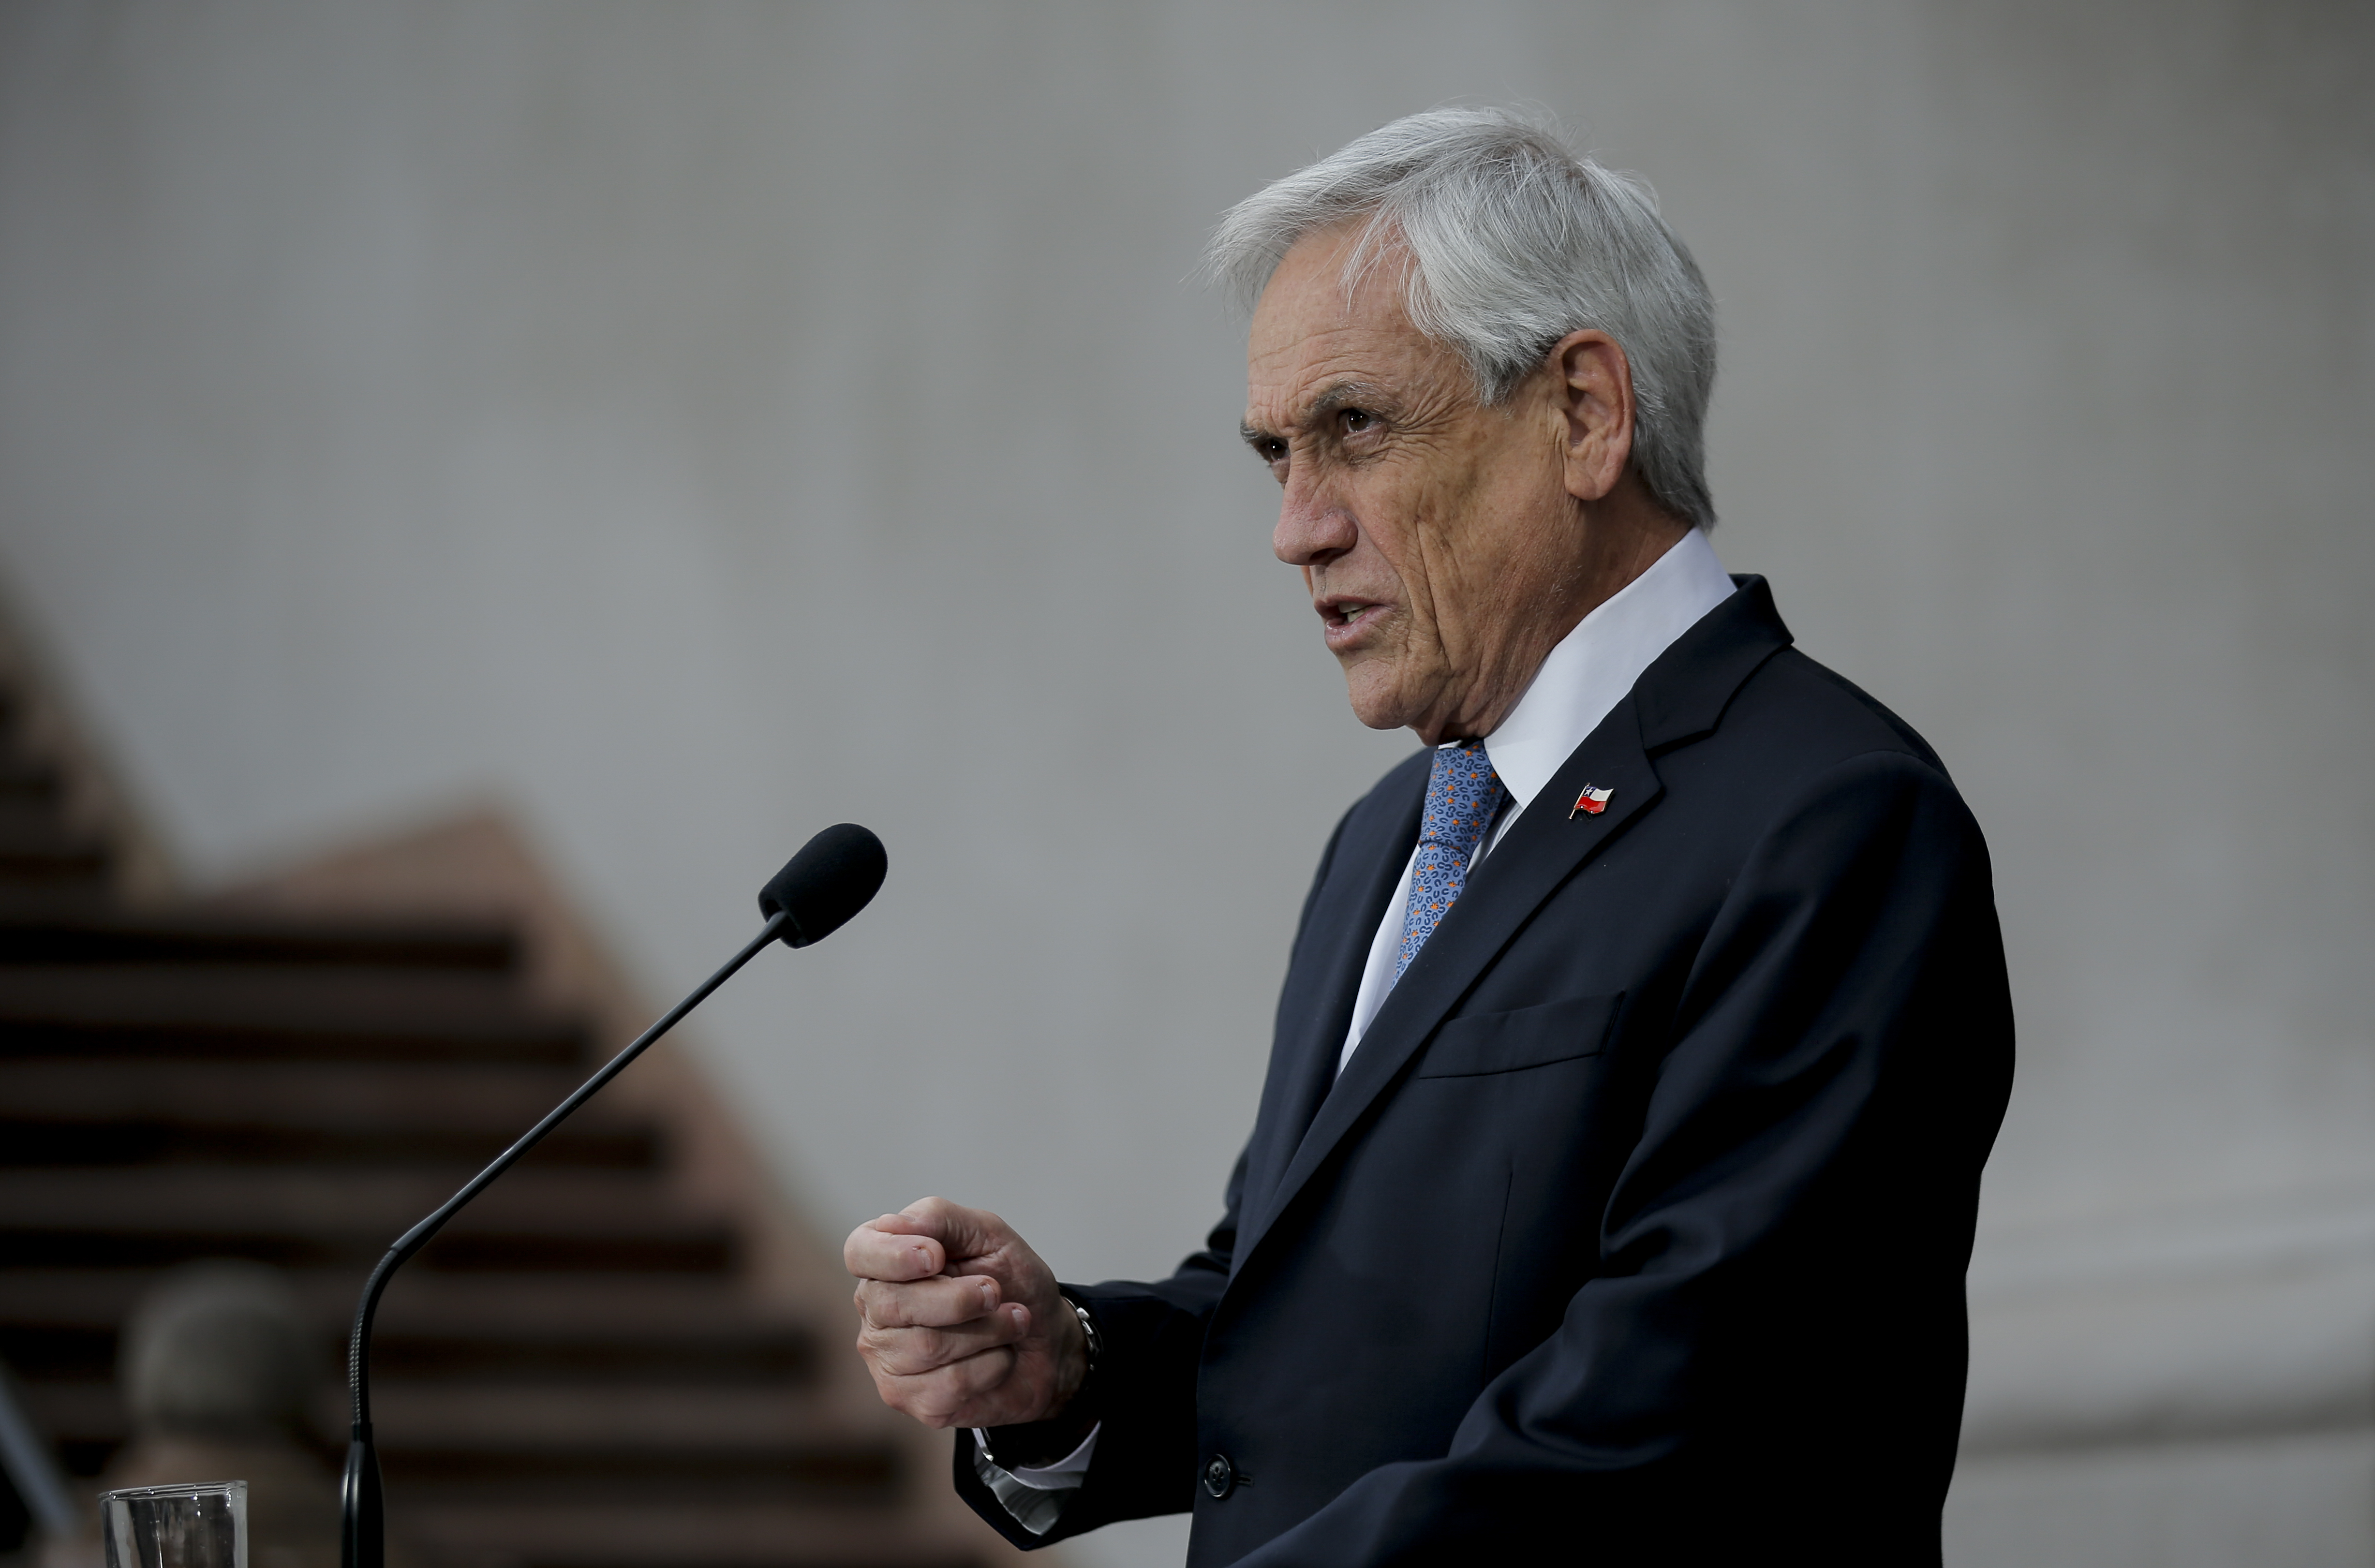 Piñera defiende su postura en materia de derechos humanos tras críticas